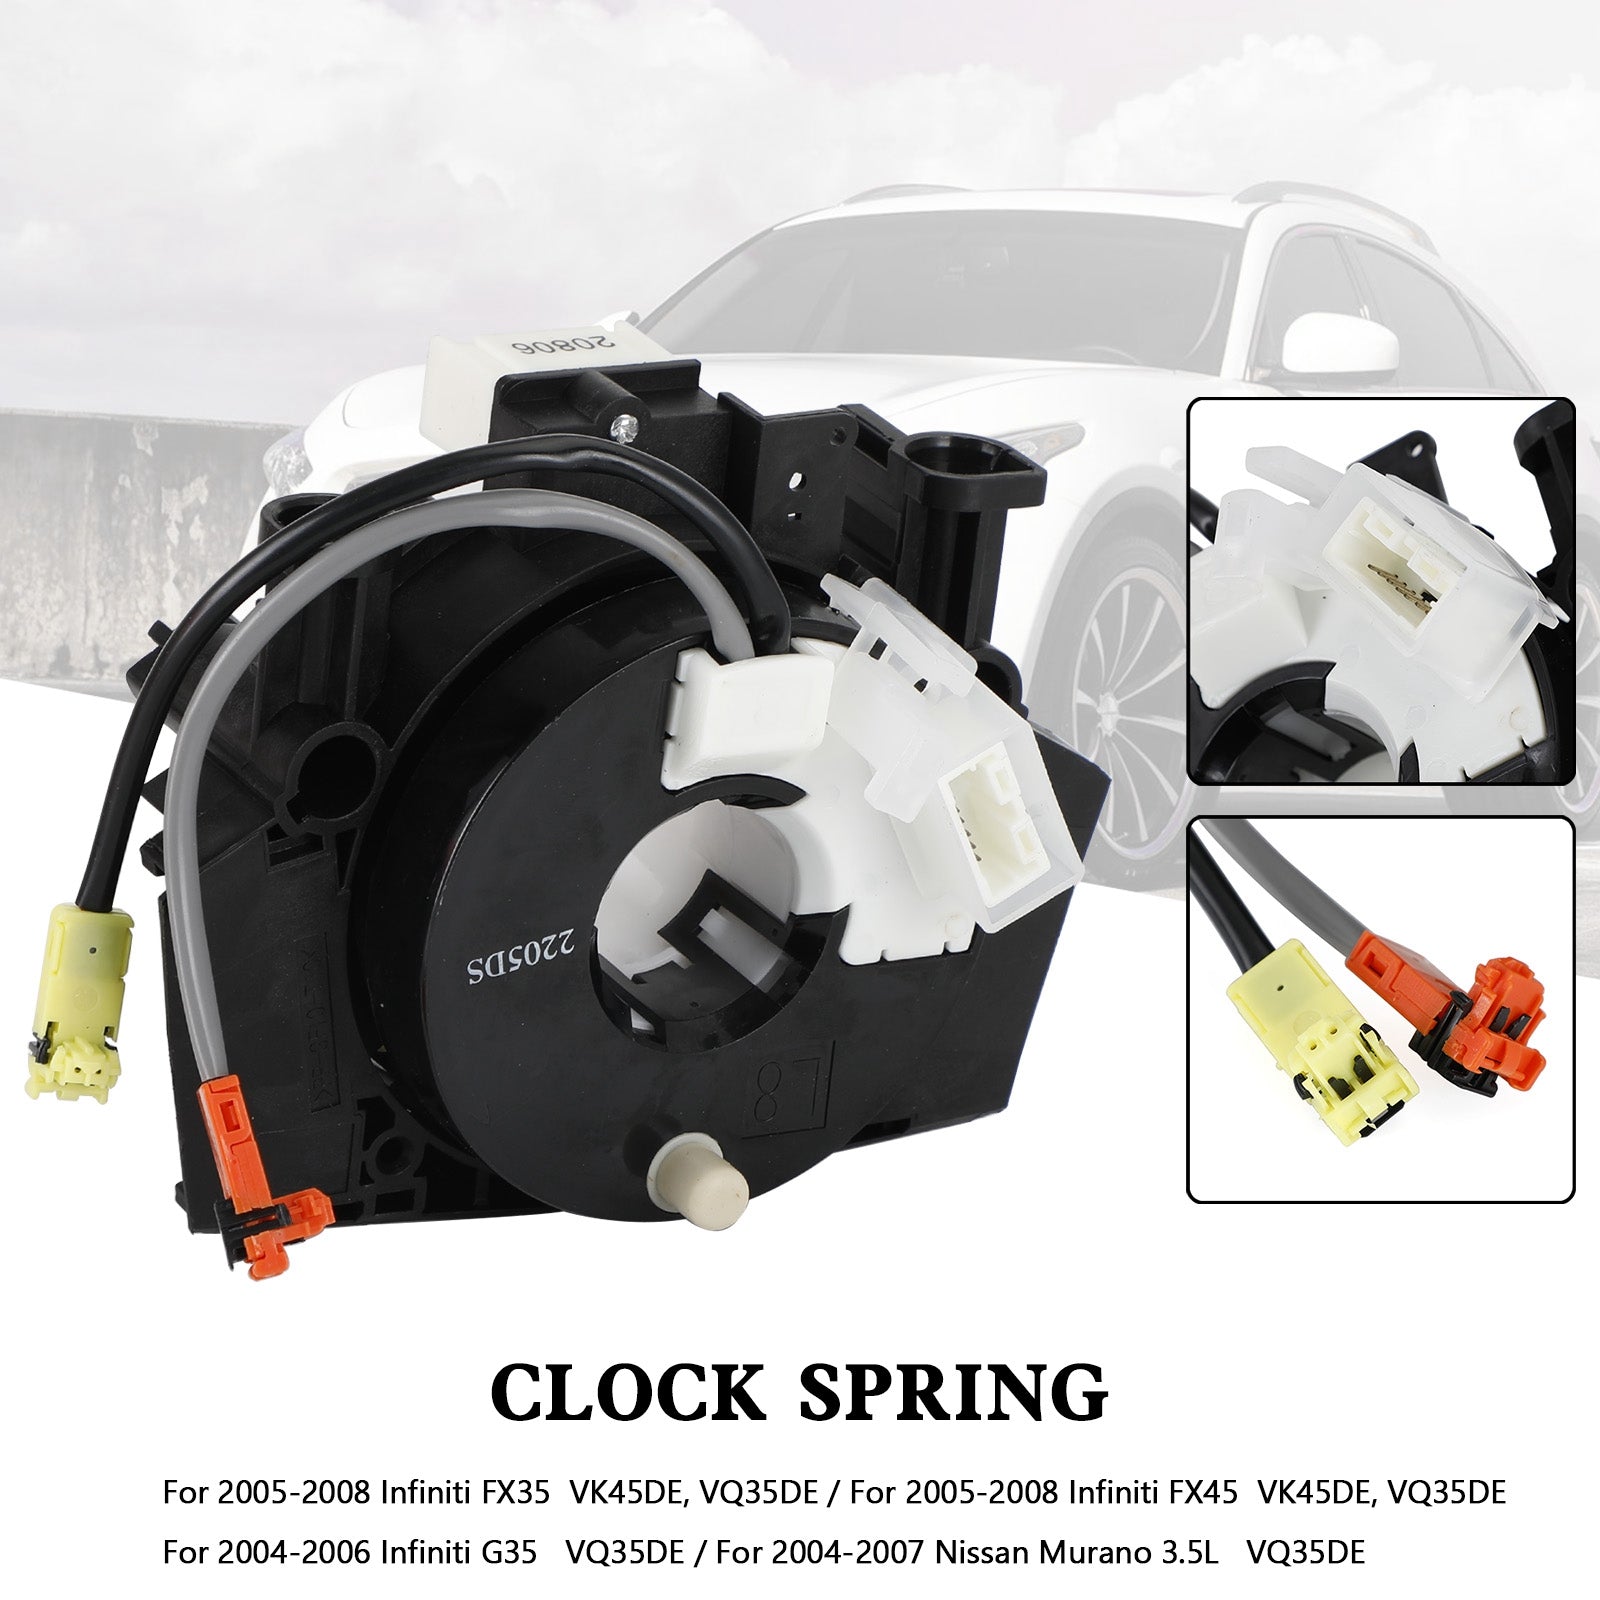 2004-2006 Infiniti G35 VQ35DE Clock Spring B5567-CC00E 25567-AC725 B5567-CC00A